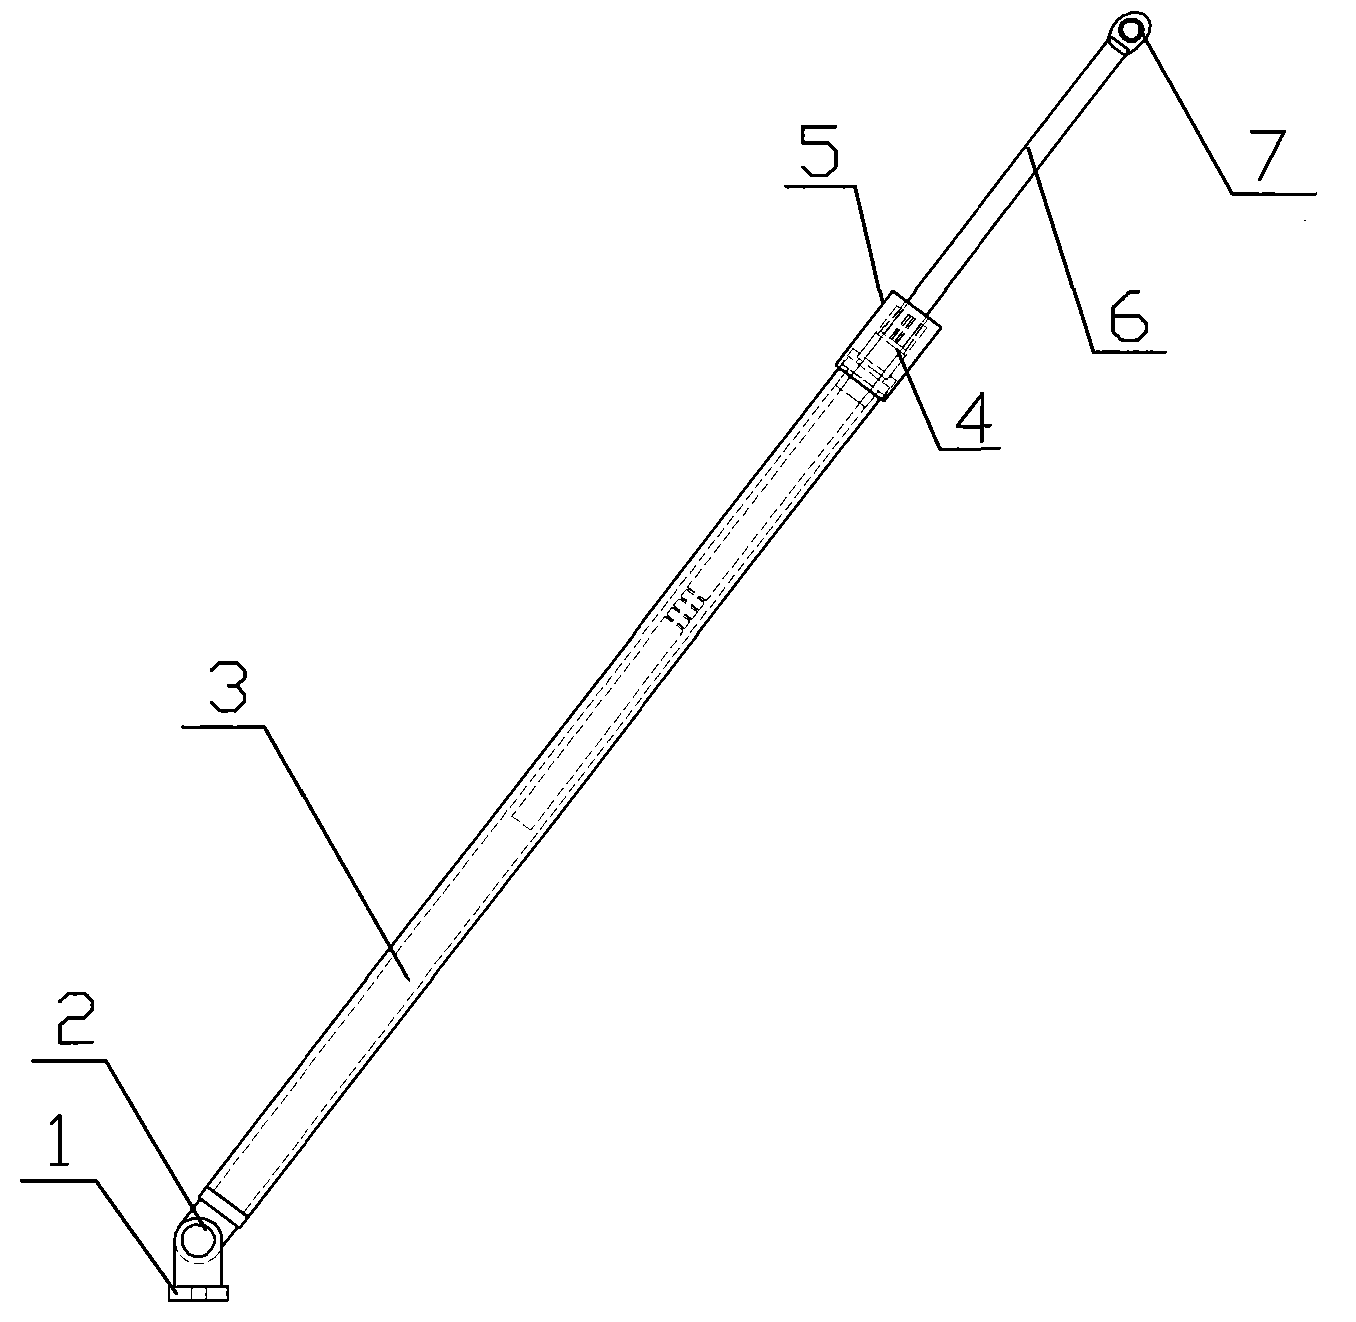 Hand-locking type support rod of tip-up door